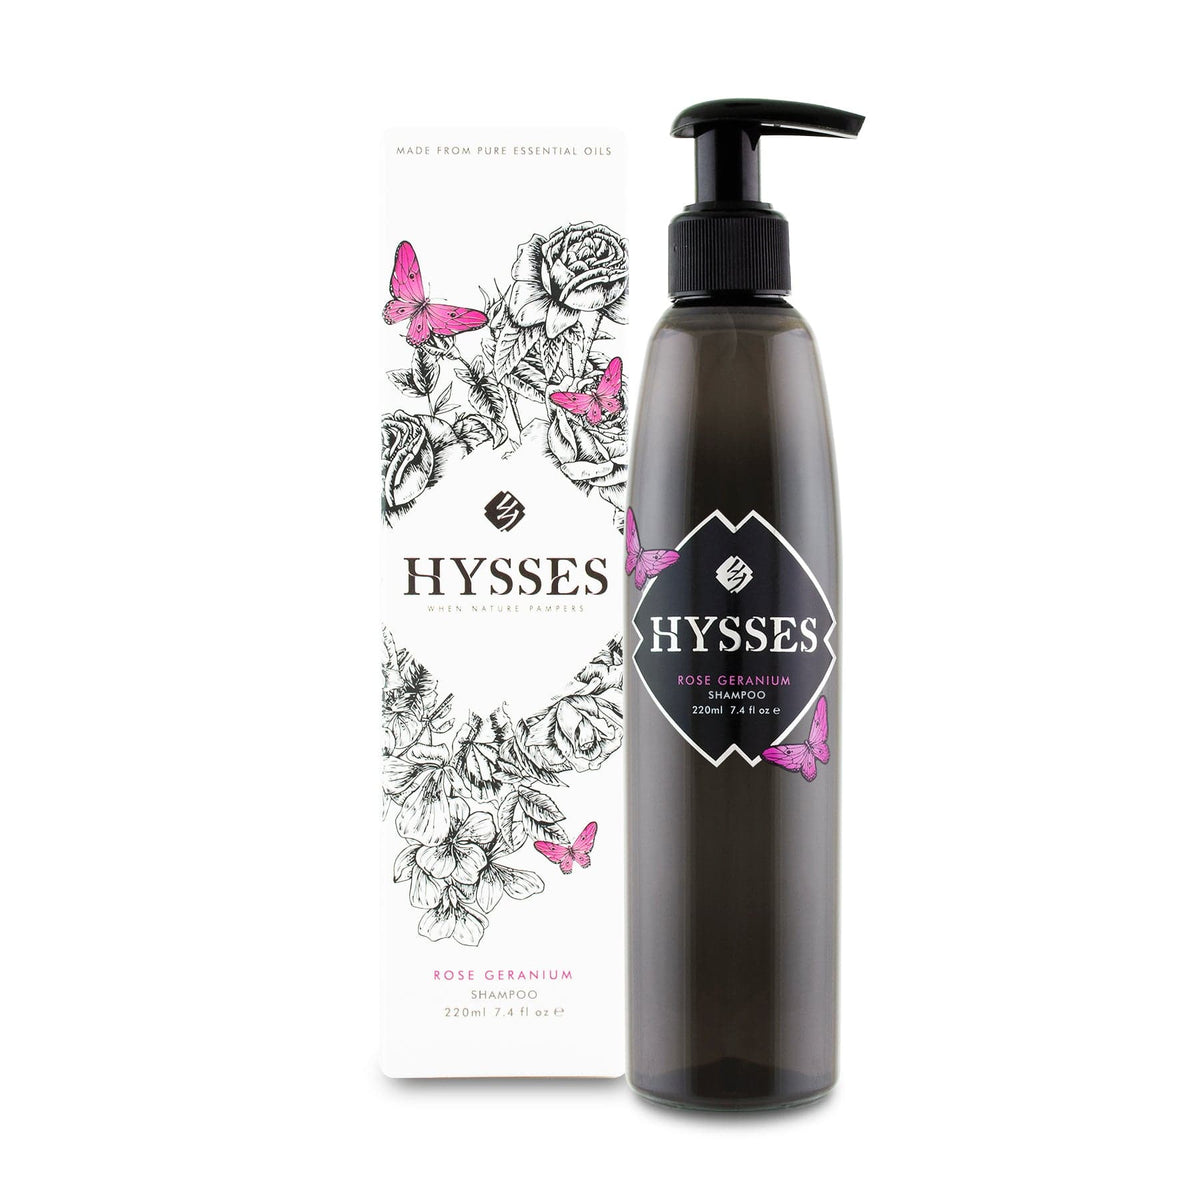 Hysses Hair Care 500ml Shampoo Rose Geranium, 500ml